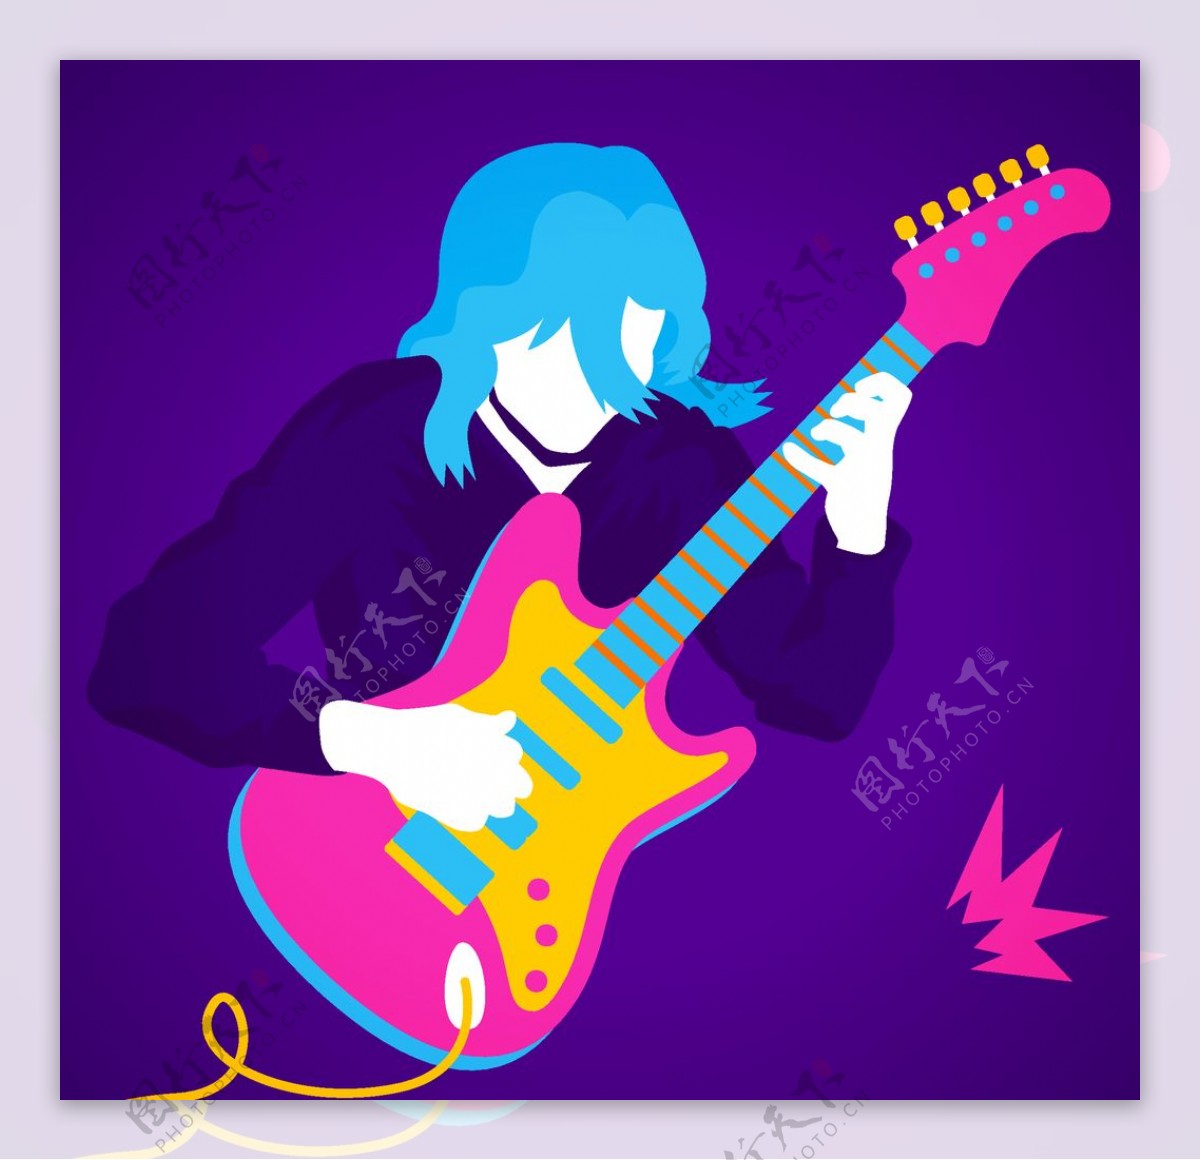 蓝色电吉他 库存照片. 图片 包括有 仪器, 通知, 金属, 字符串, 岩石, 困难, 蓝色, 空白, 吉他 - 14699152